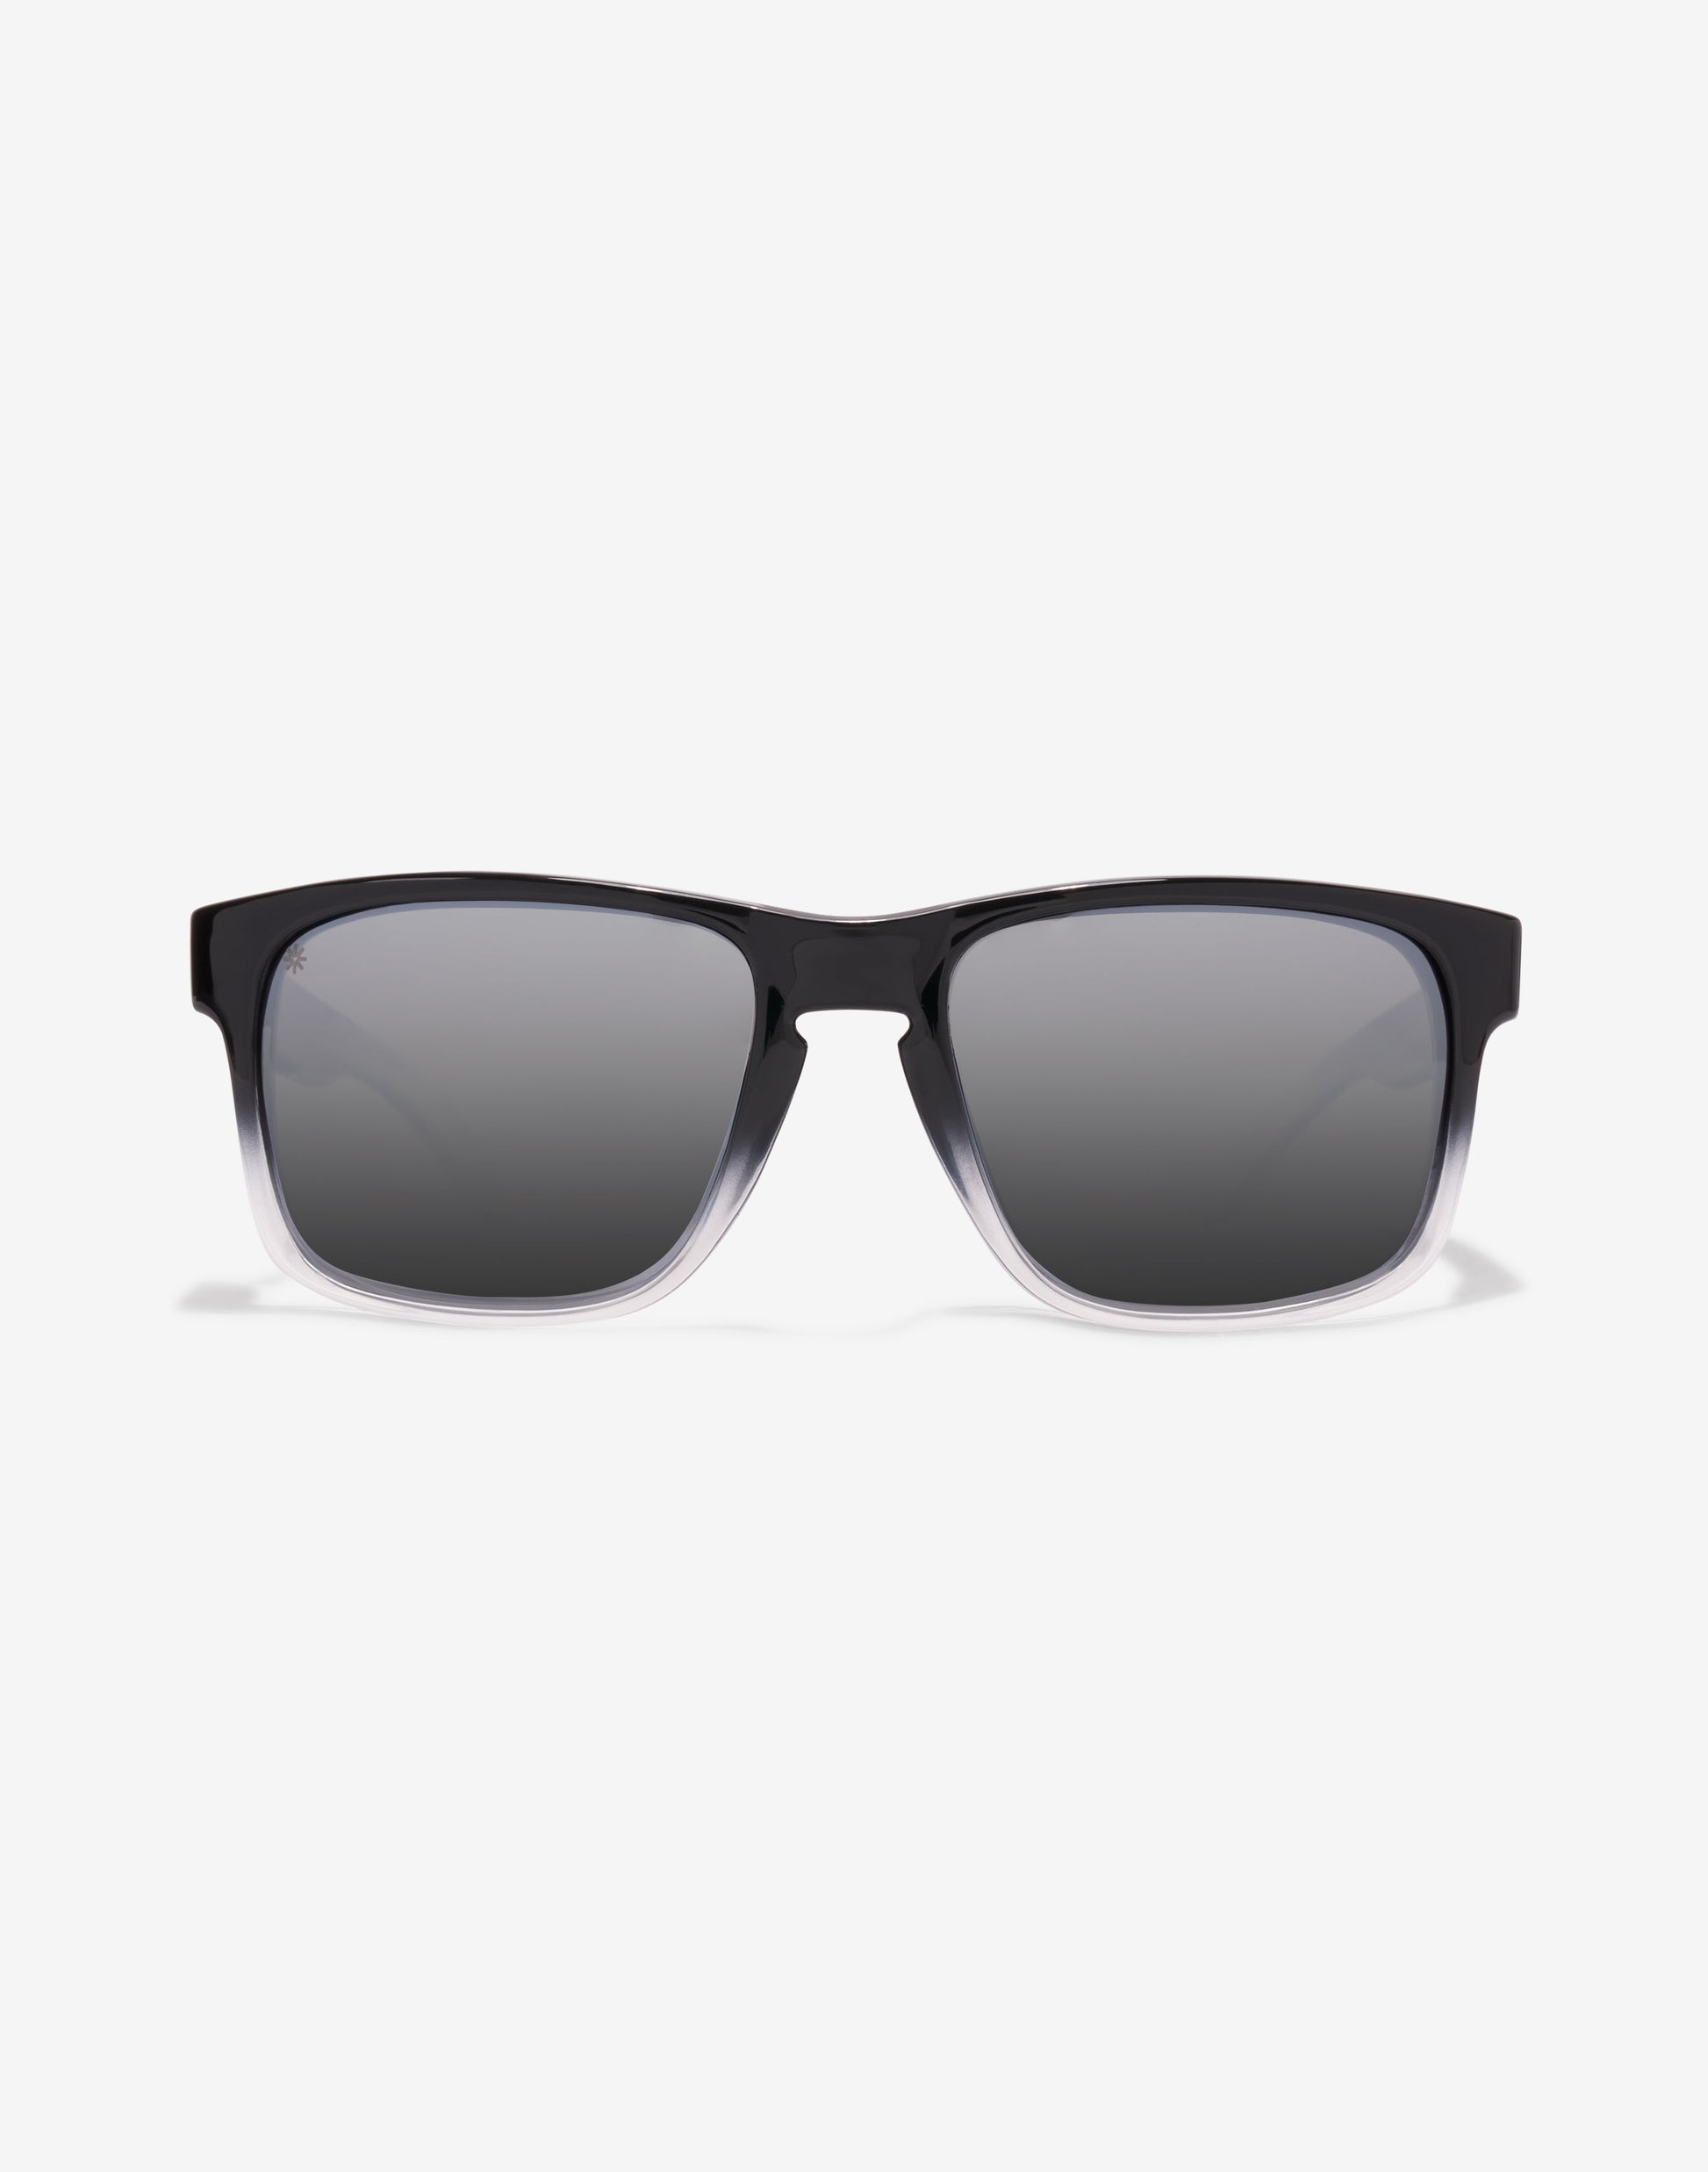 Prime Shine Tortoise Polarized Sunglasses - Twinyards